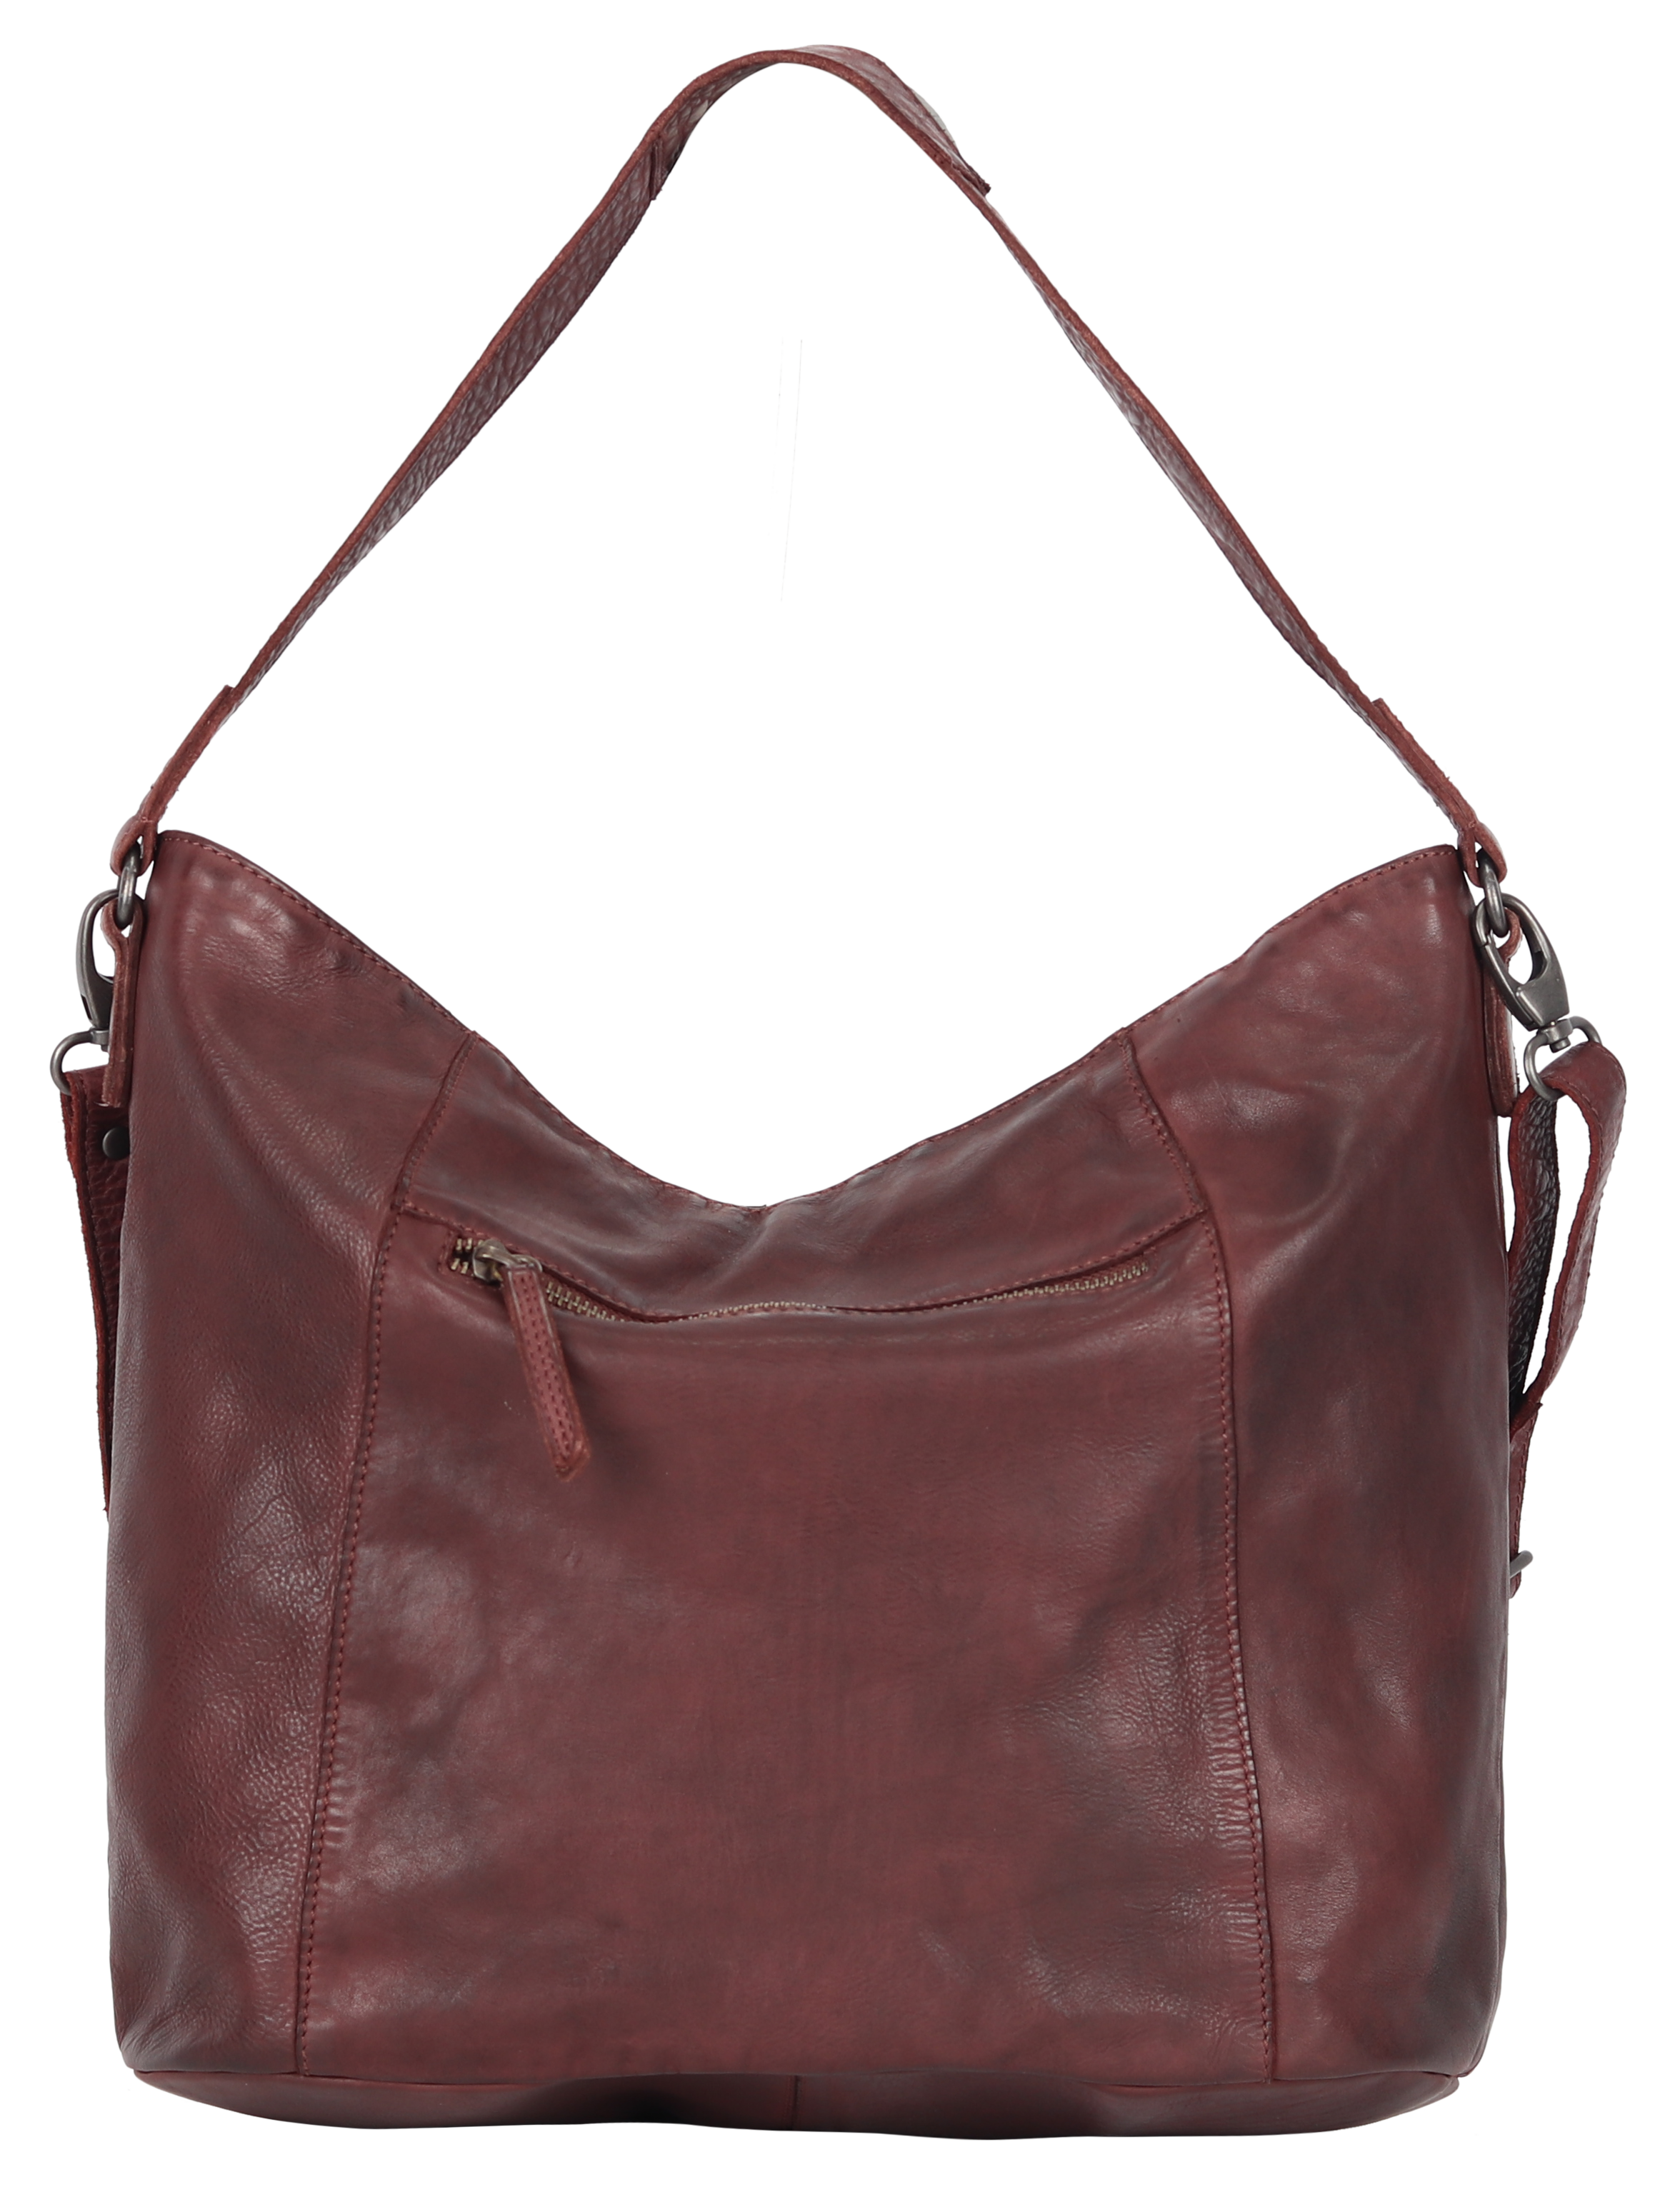 MET Large Braided Leather Handbag